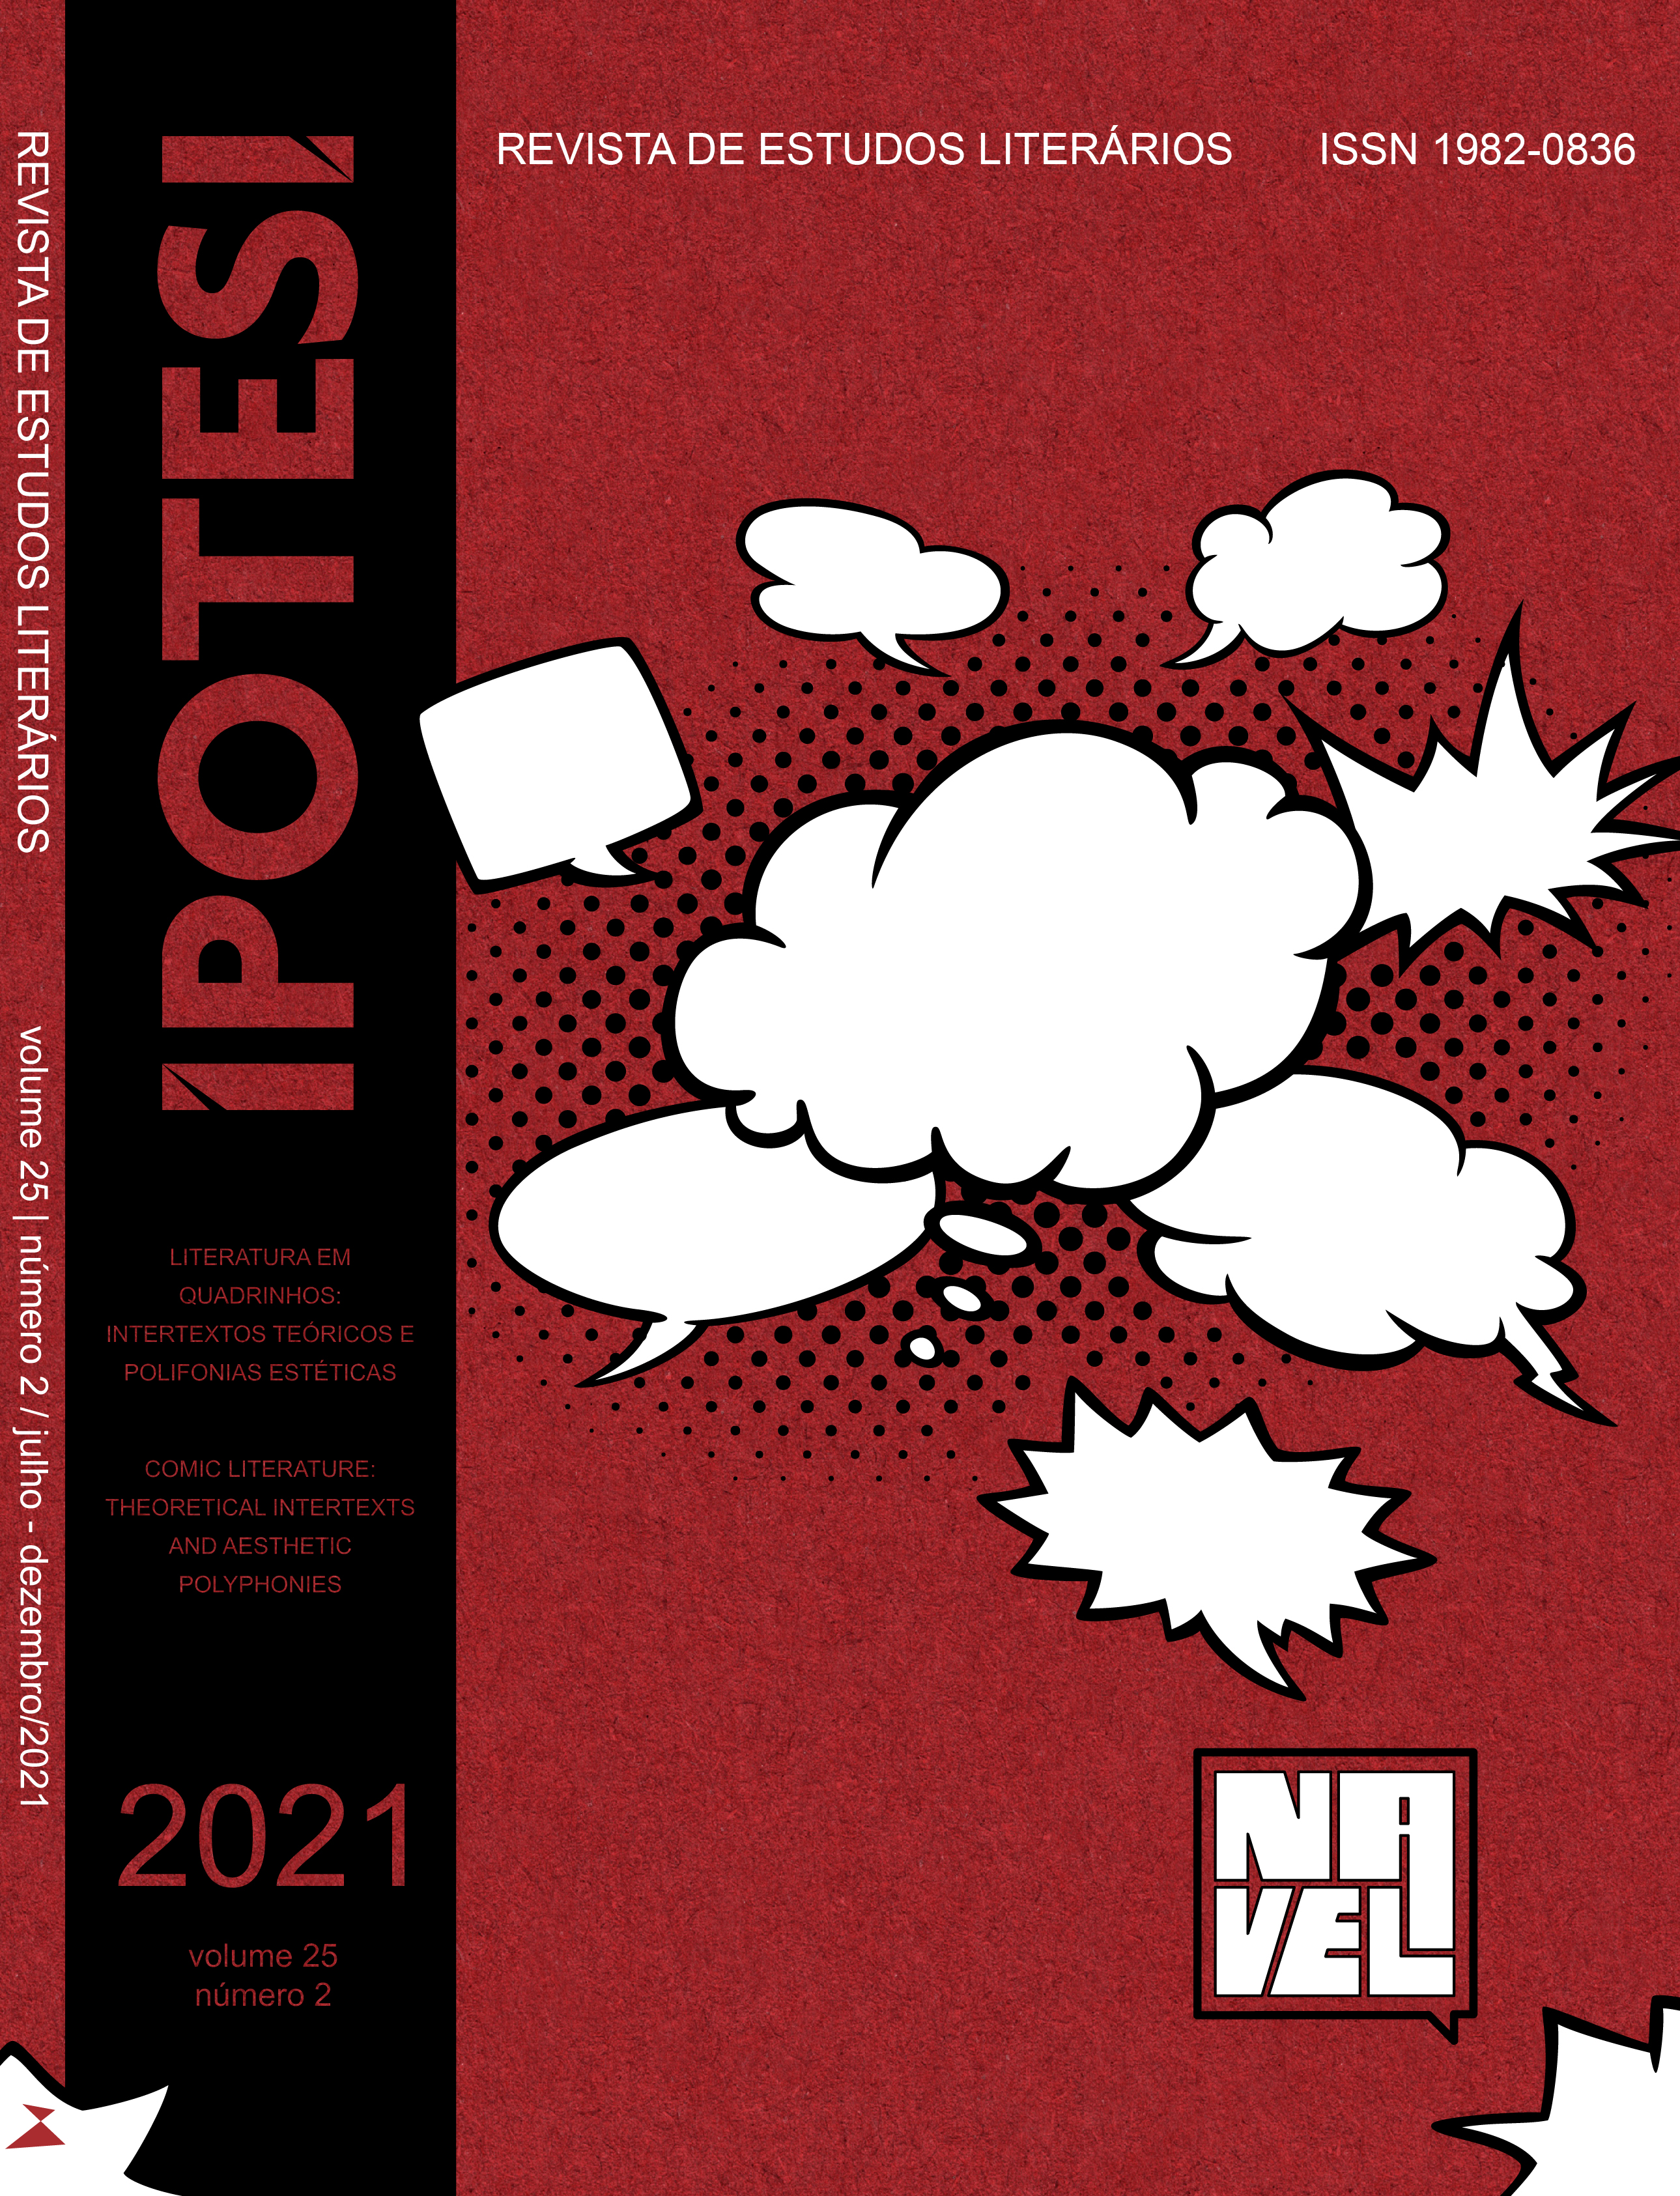 					Visualizar v. 25 n. 2 (2021): Literatura em quadrinhos: intertextos teóricos e polifonias estéticas
				